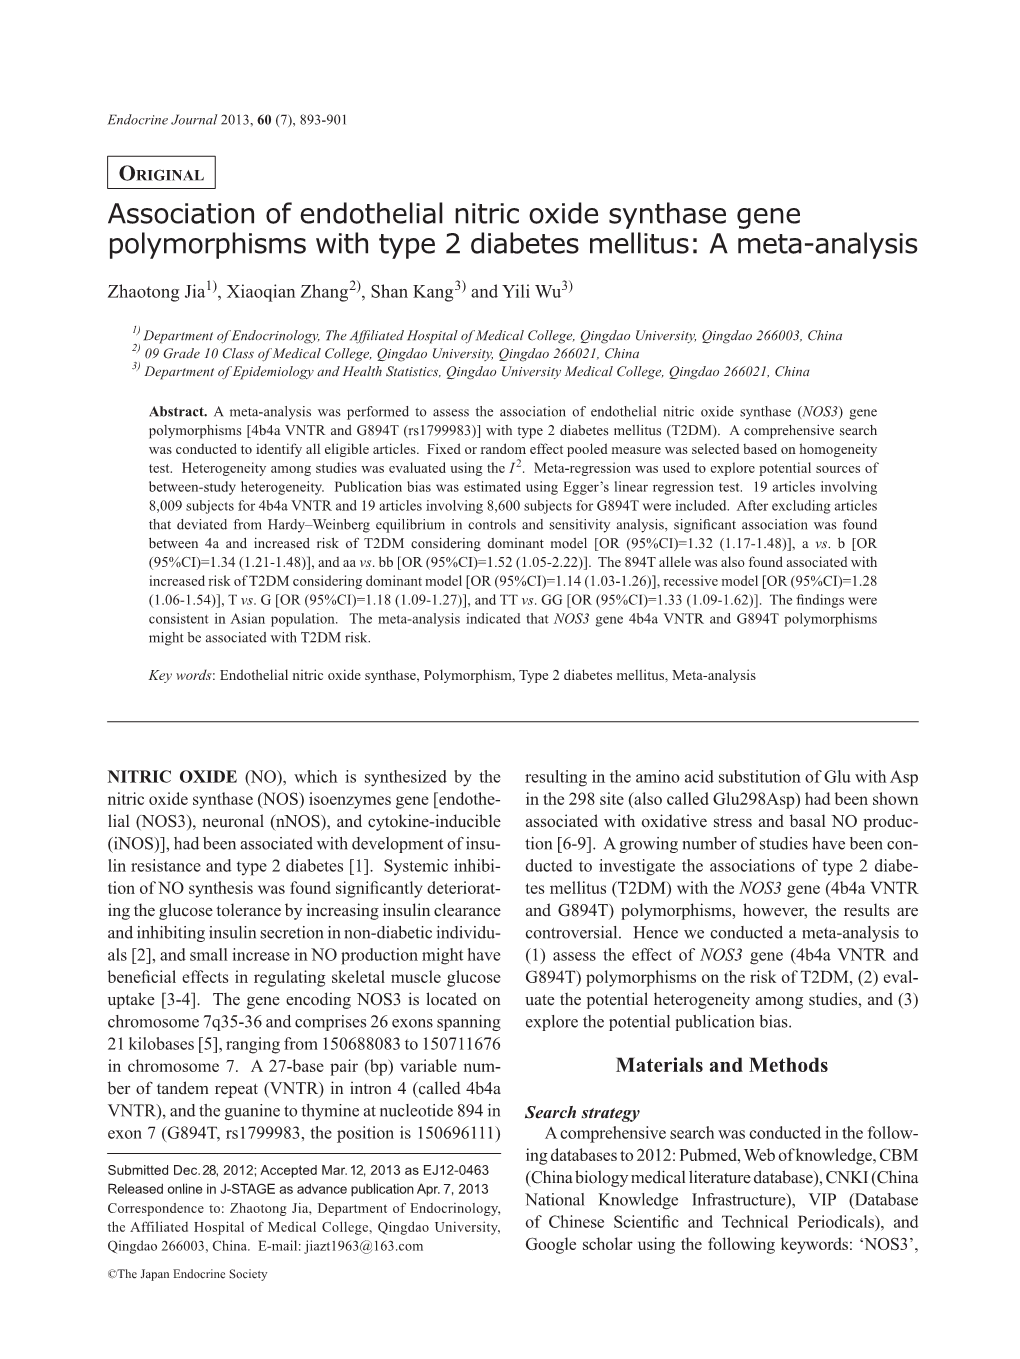 Association of Endothelial Nitric Oxide Synthase Gene Polymorphisms with Type 2 Diabetes Mellitus: a Meta-Analysis